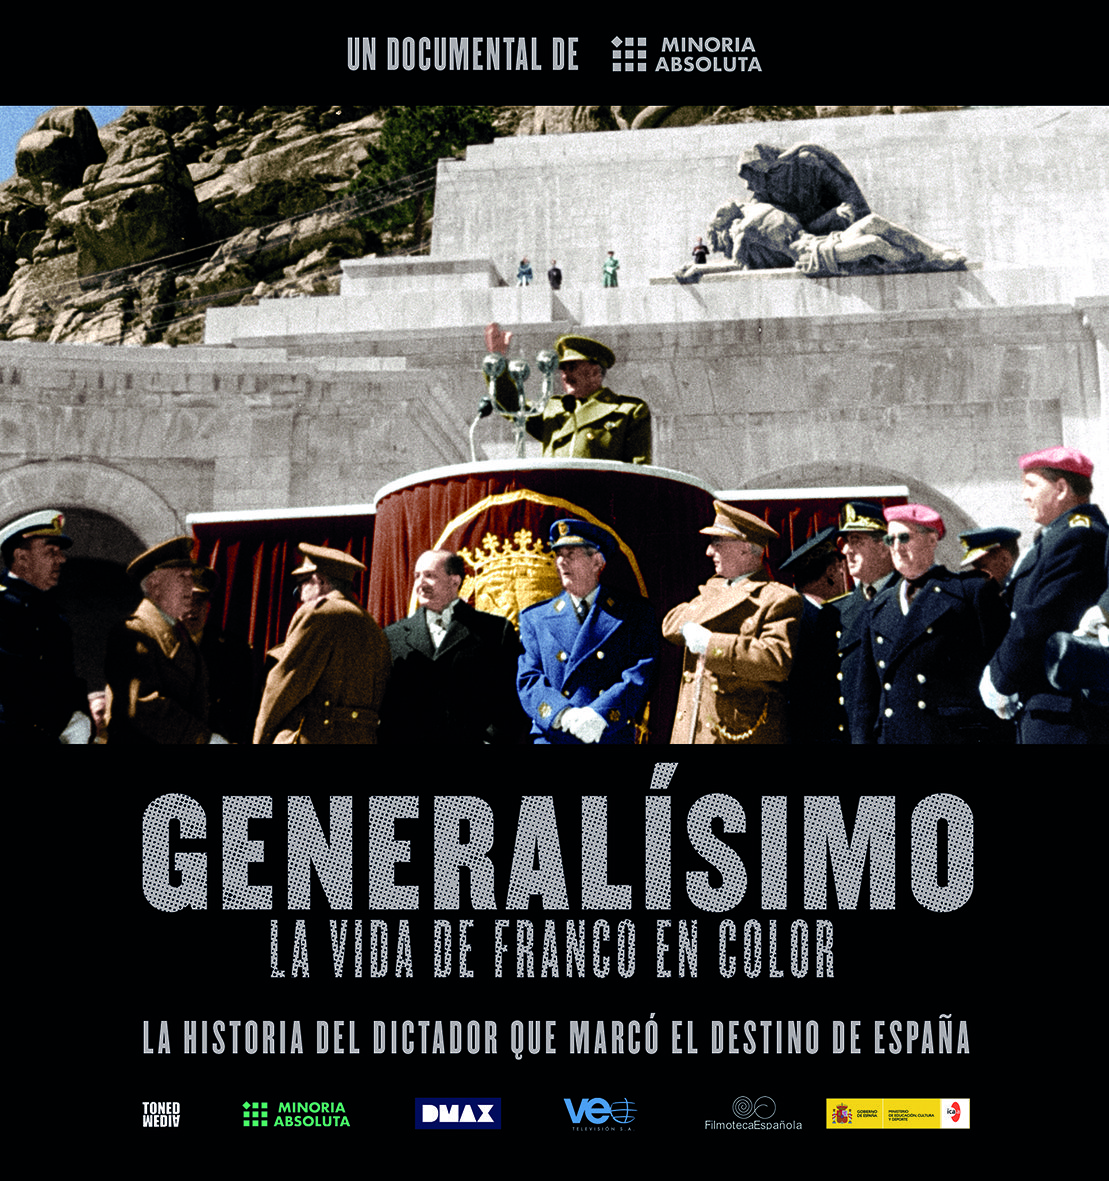 'Generalísimo' Franco Minoría Absoluta Still6